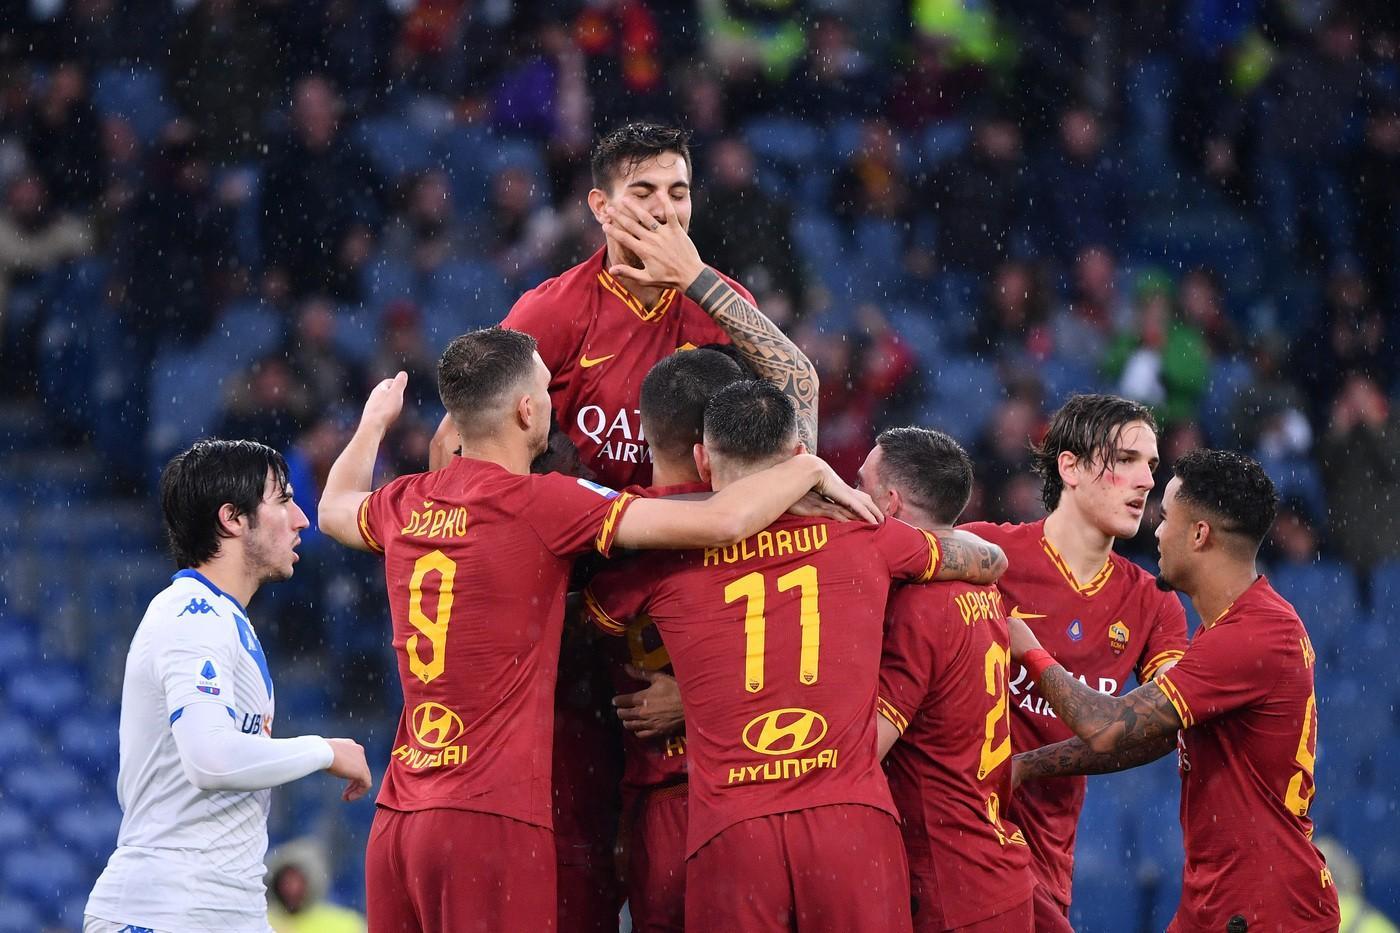 L'esultanza dei giocatori della Roma dopo uno dei gol segnati contro il Brescia ©LaPresse